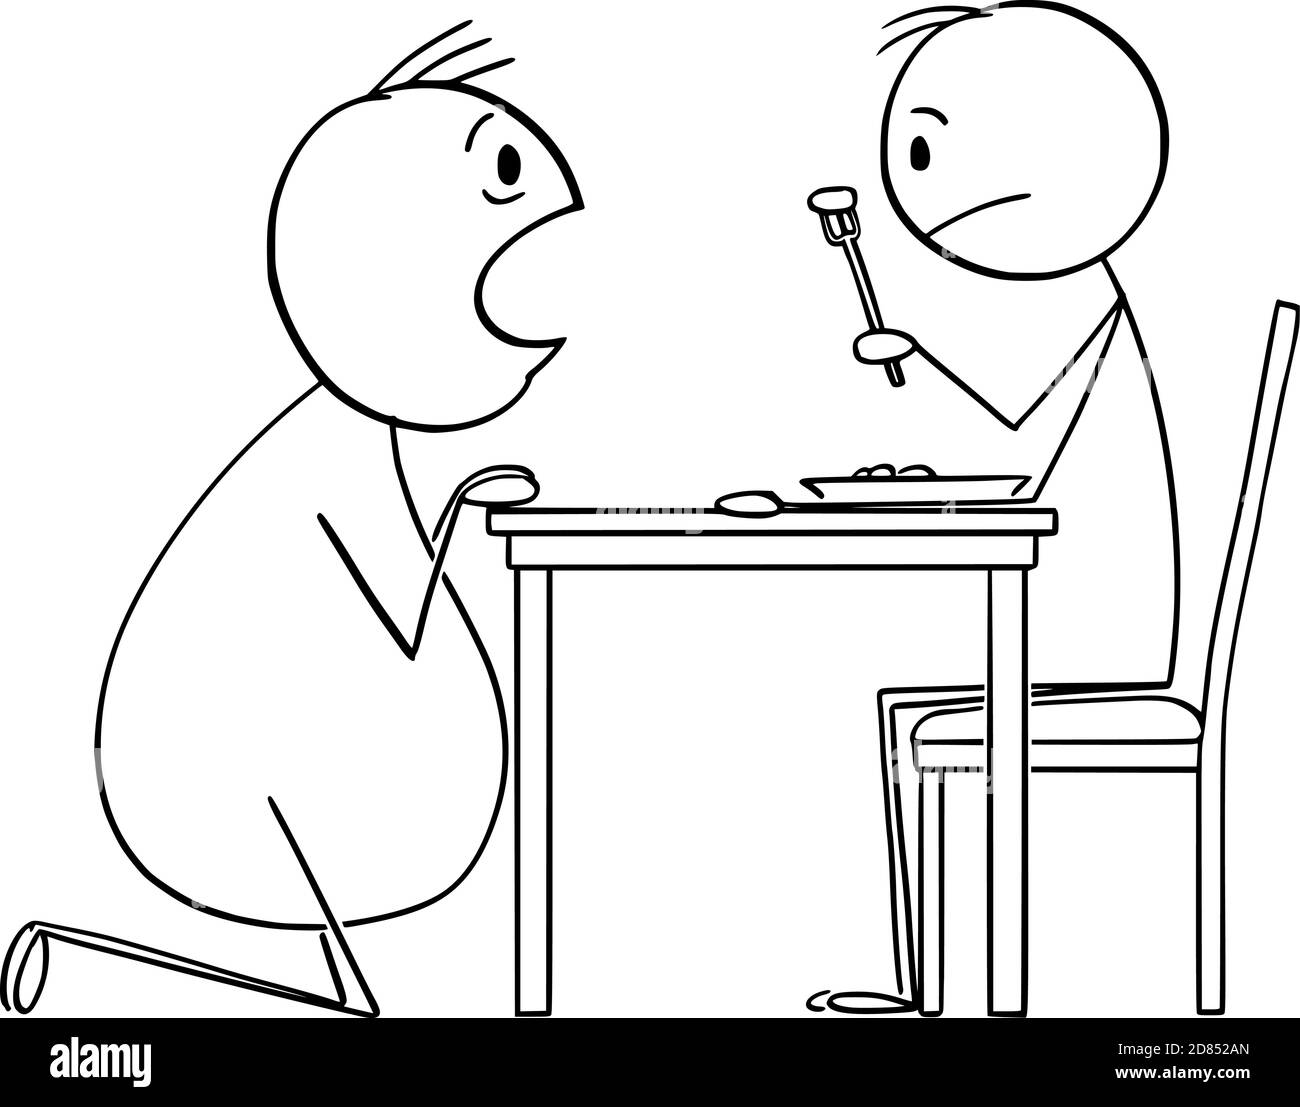 Vecteur dessin animé figure illustration de gros homme affamé de nourriture de l'homme mince manger son déjeuner. Illustration de Vecteur